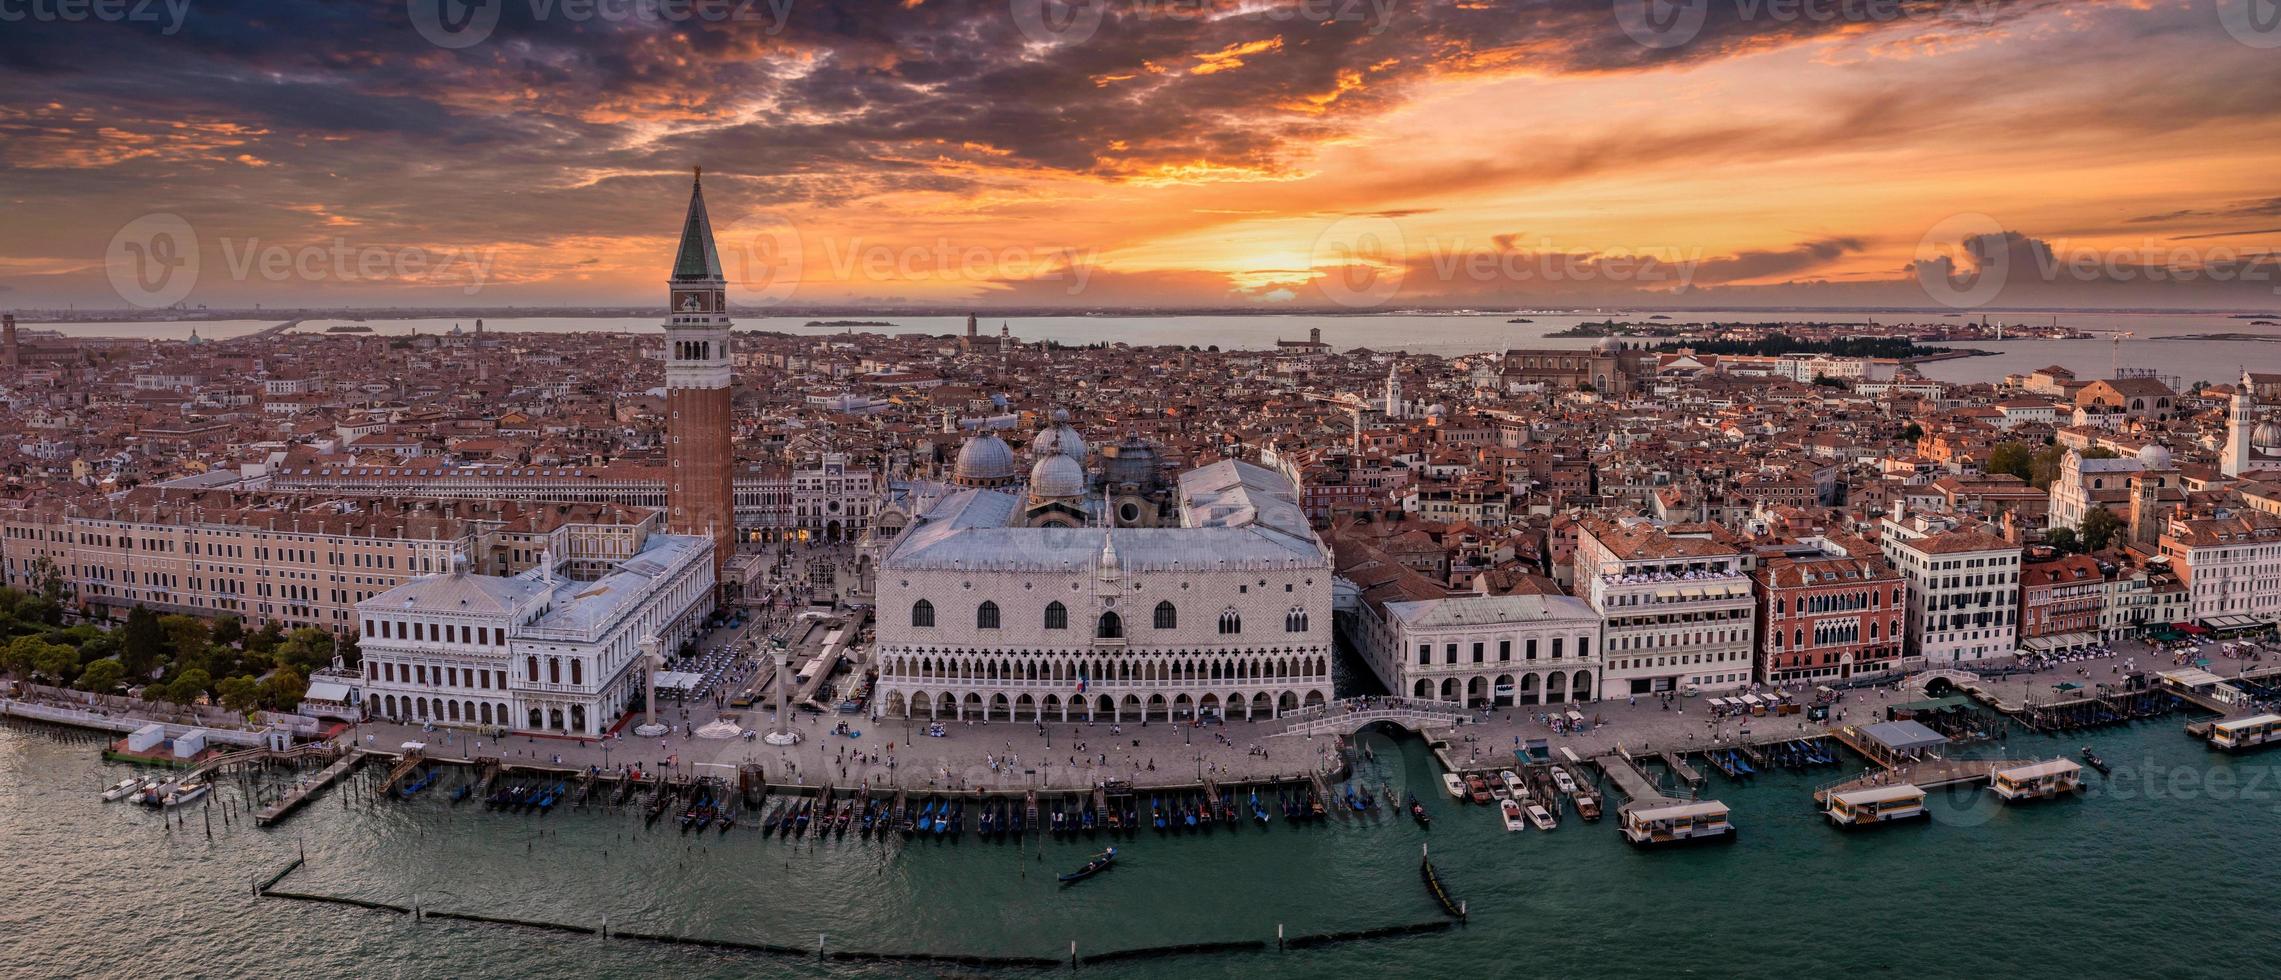 foto aerea panoramica dell'isola di san giorgio maggiore a venezia